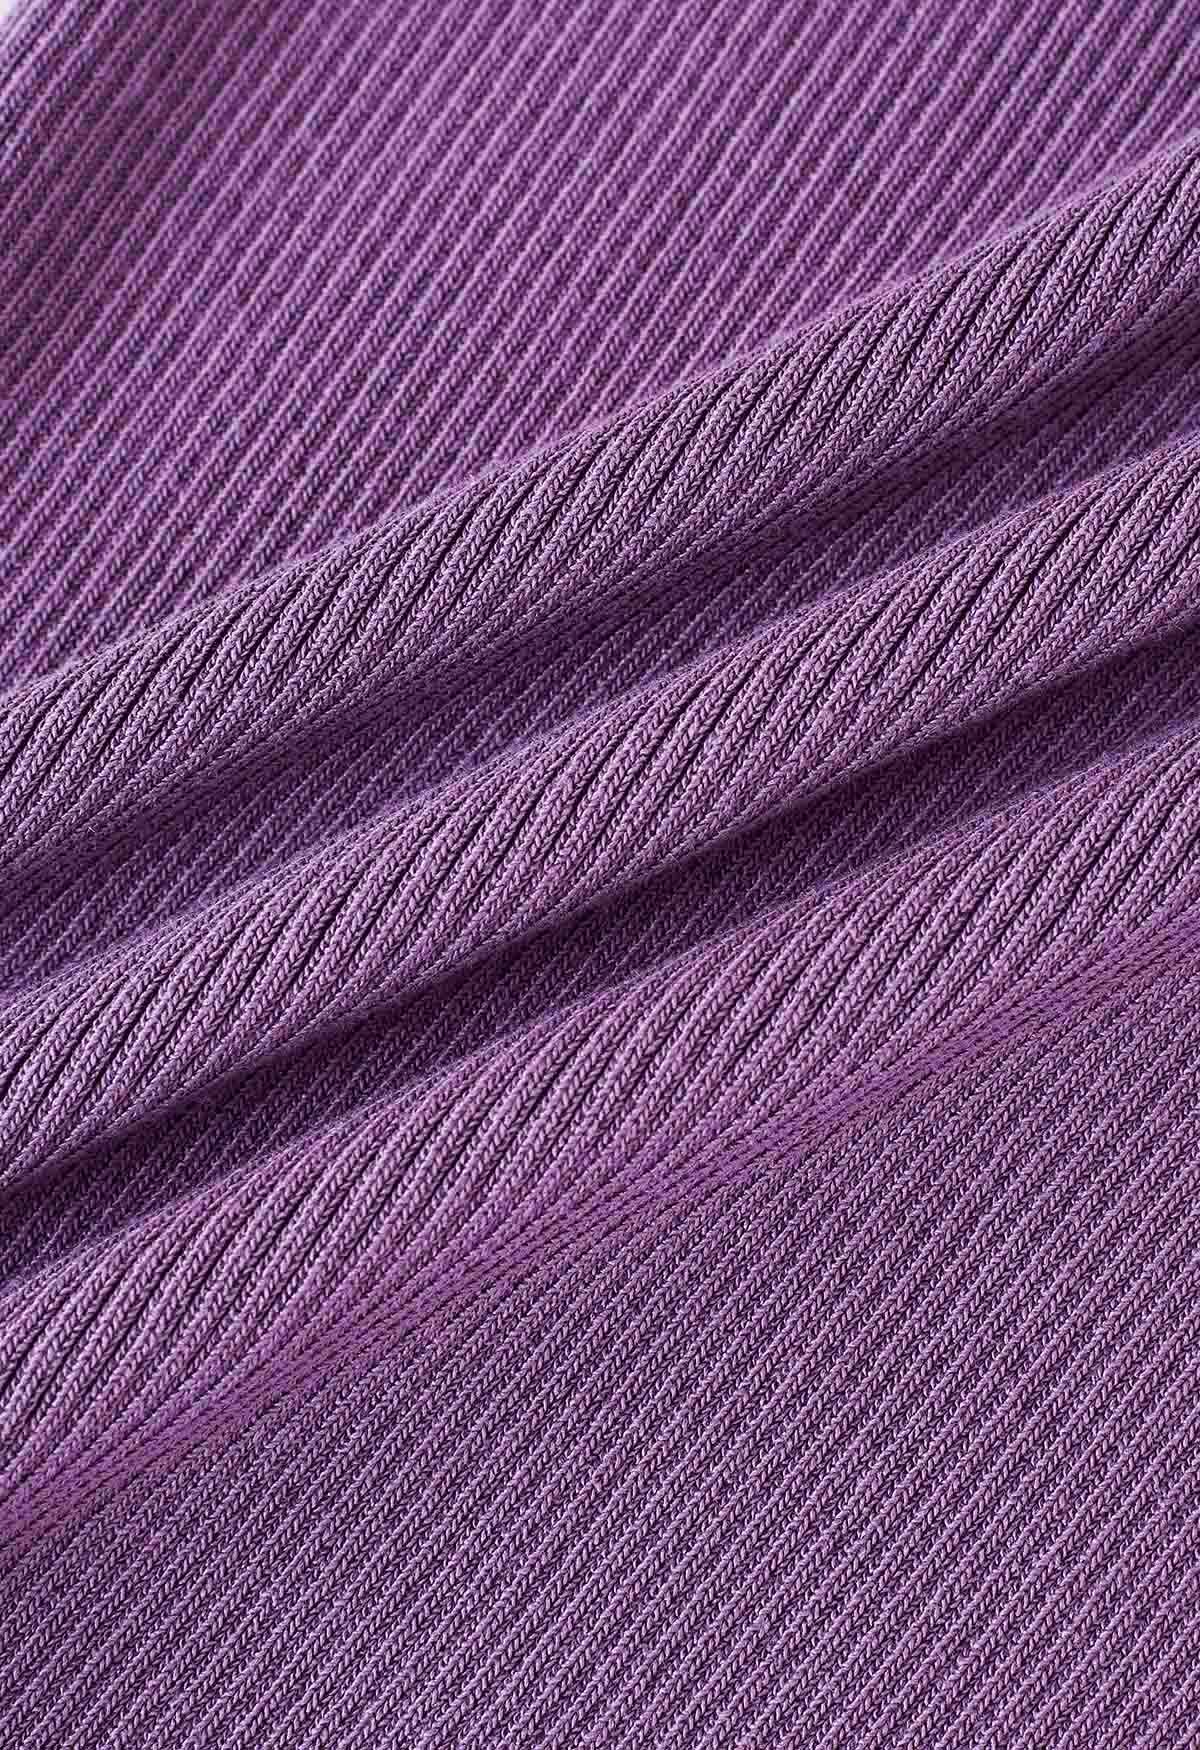 Robe caraco moulante en tricot torsadé sur le devant en violet